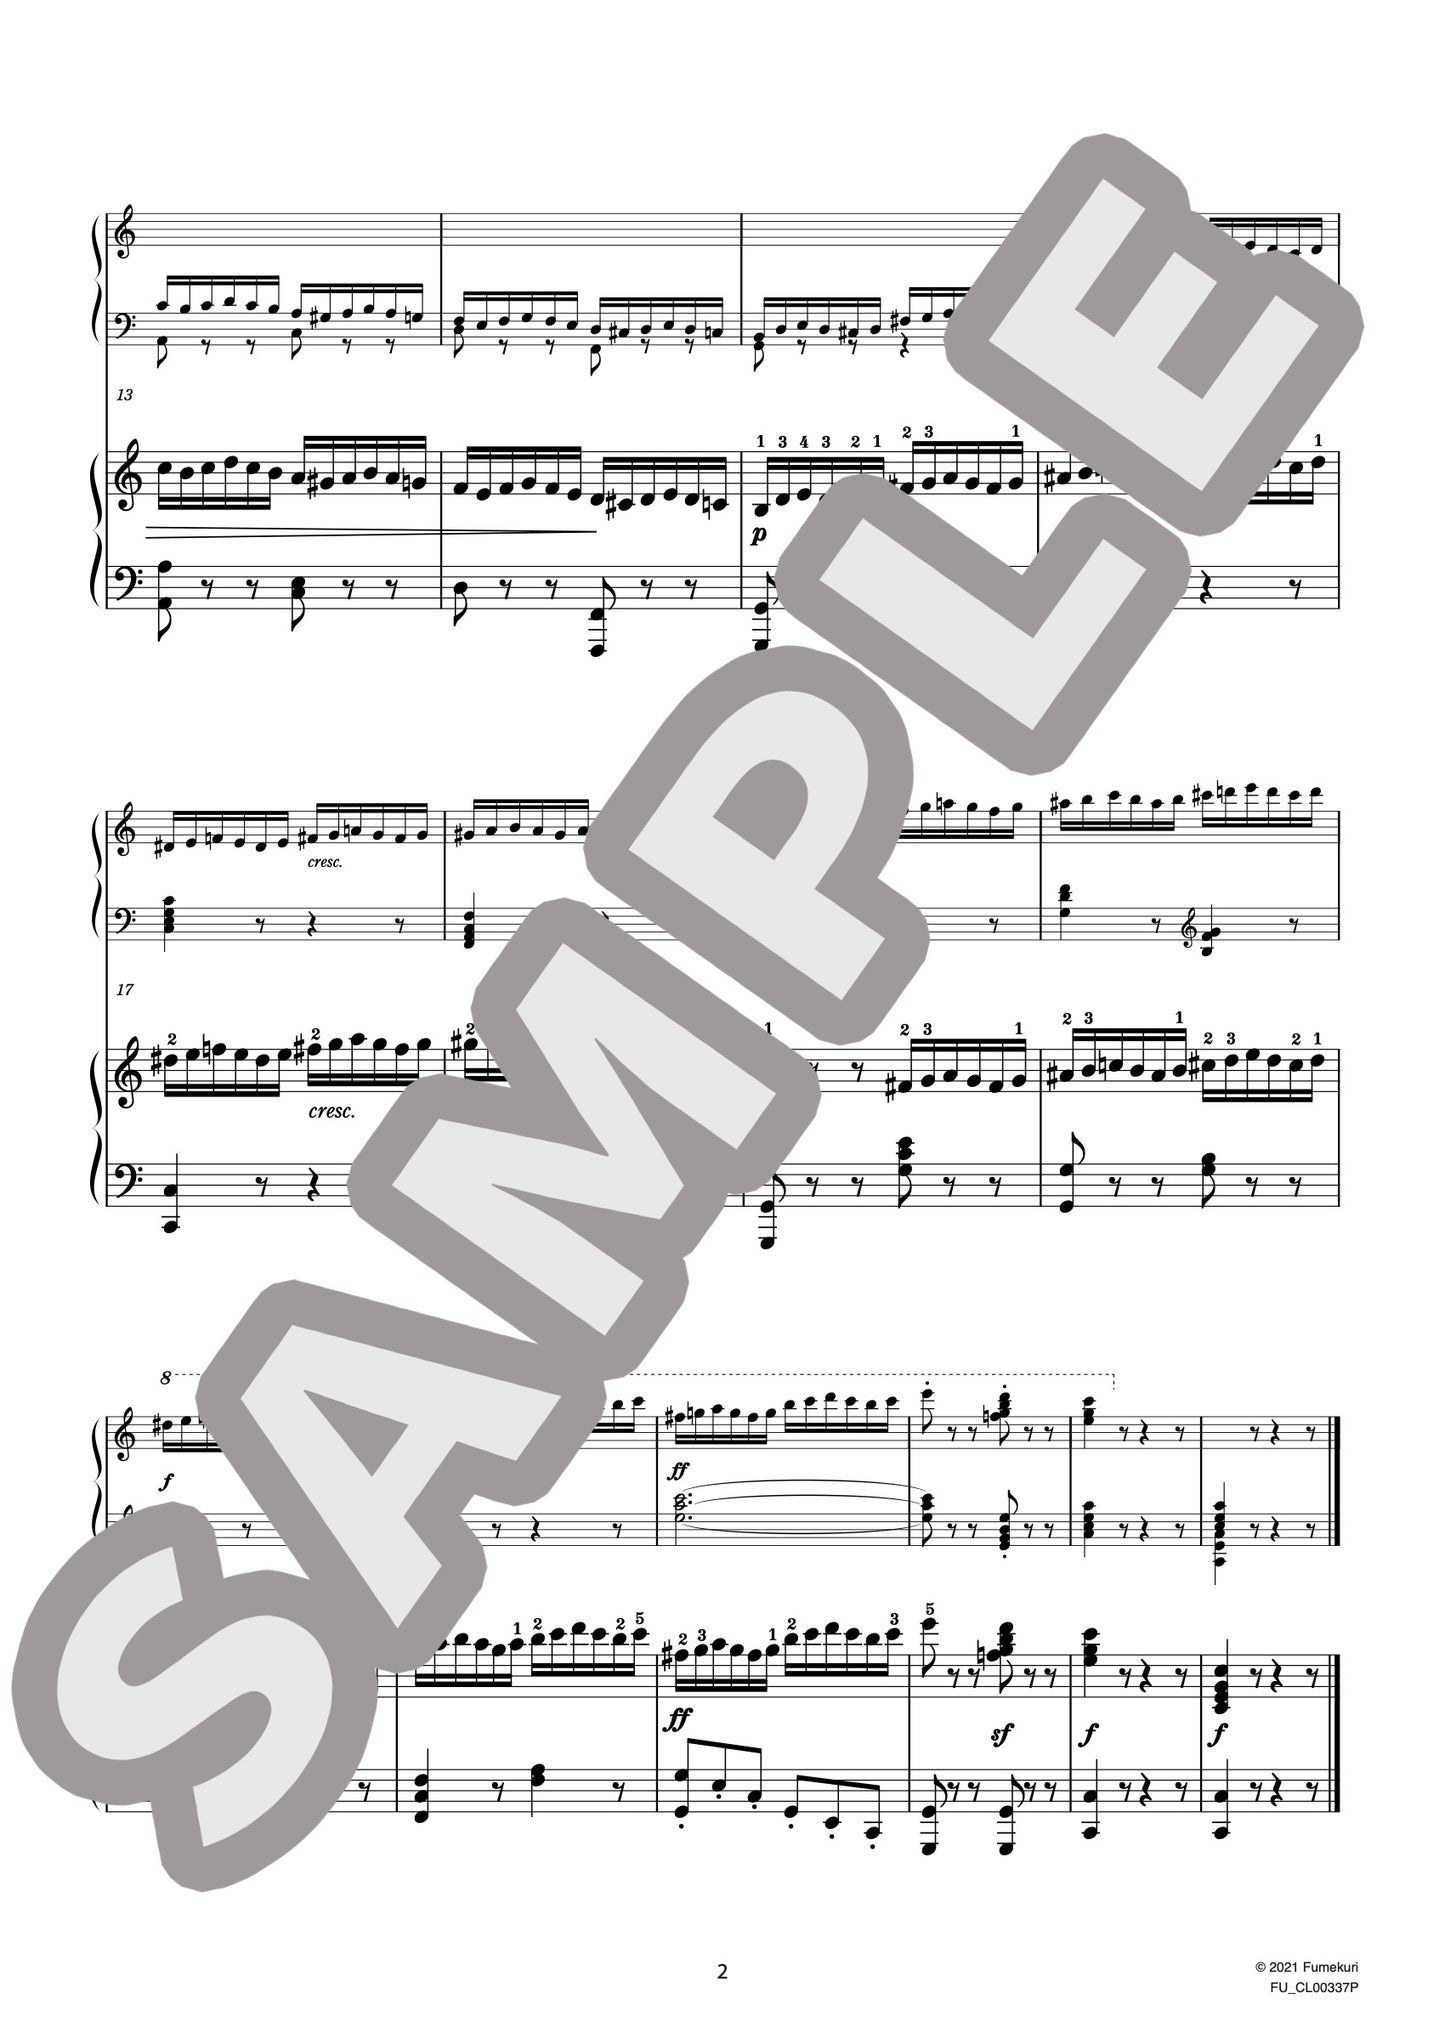 2台のピアノのための速度練習曲（40番練習曲）作品299b 第4番（CZERNY) / クラシック・オリジナル楽曲【中上級】